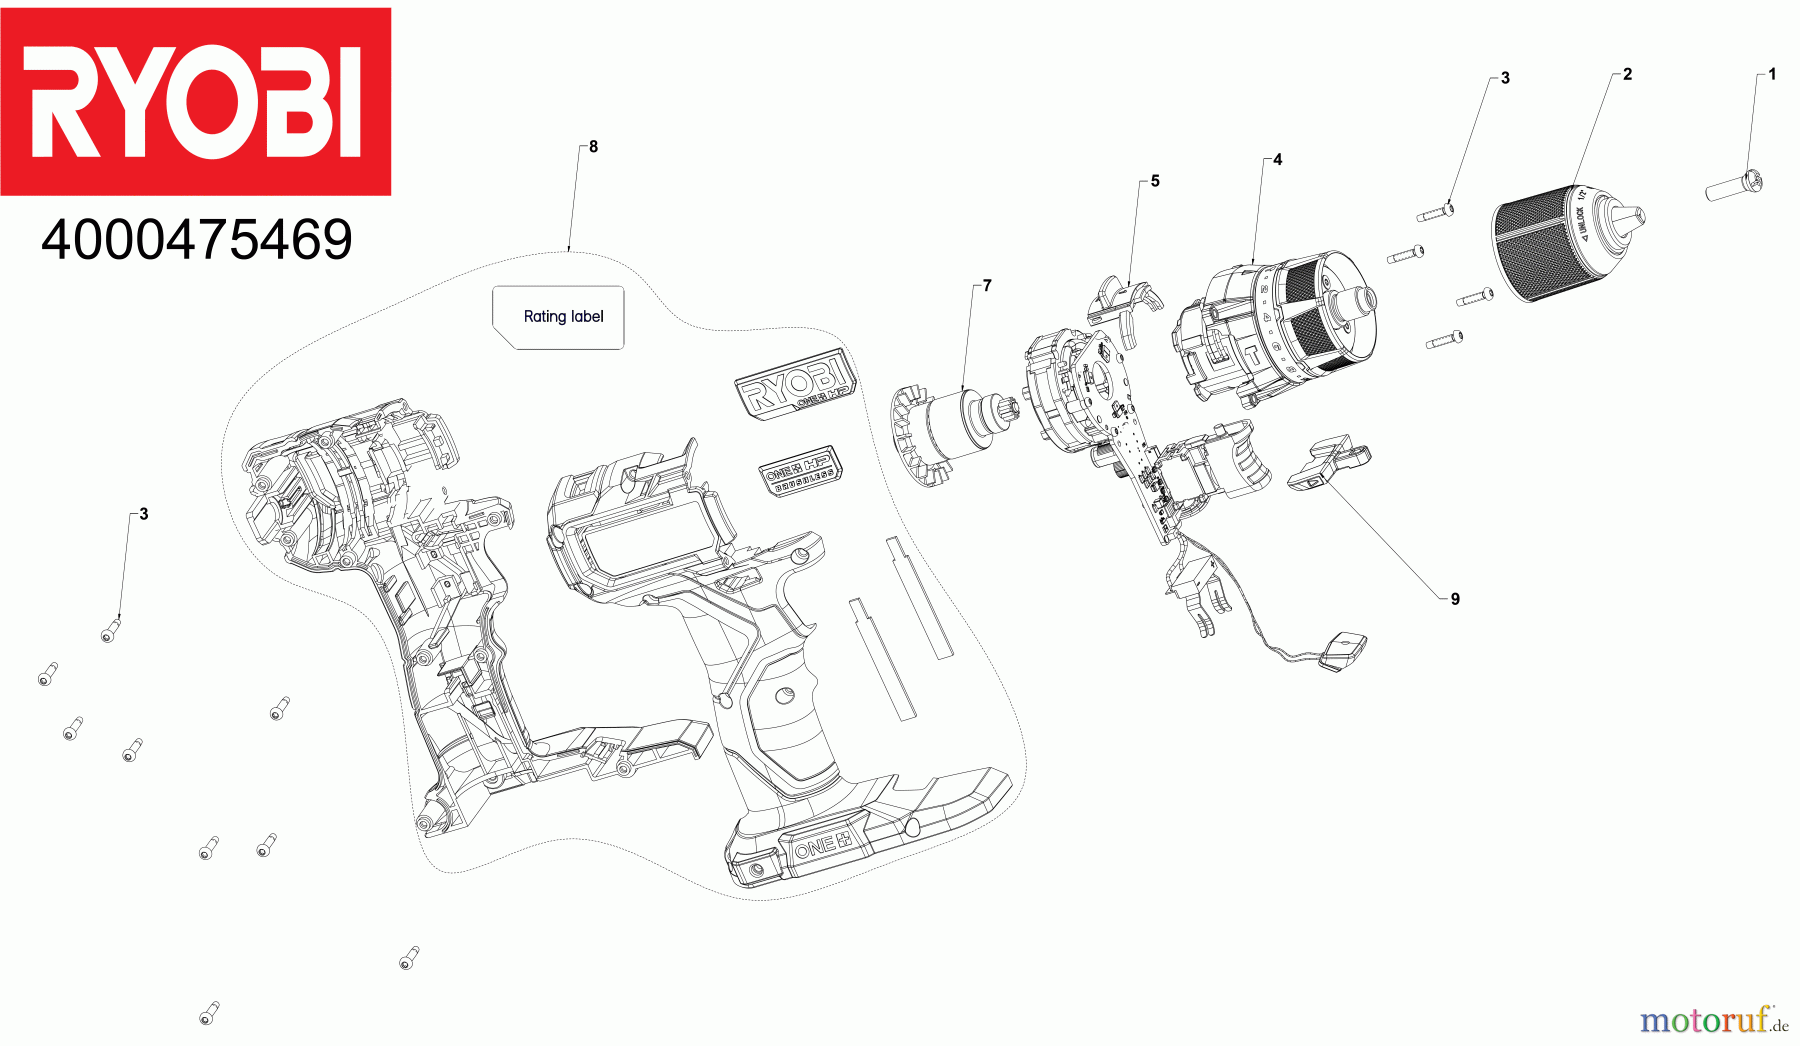  Ryobi (Schlag-)Bohrschrauber Bohrschrauber mit Schlagbohrfunktion RPD18C AKKU-SCHLAGBOHRER Seite 1